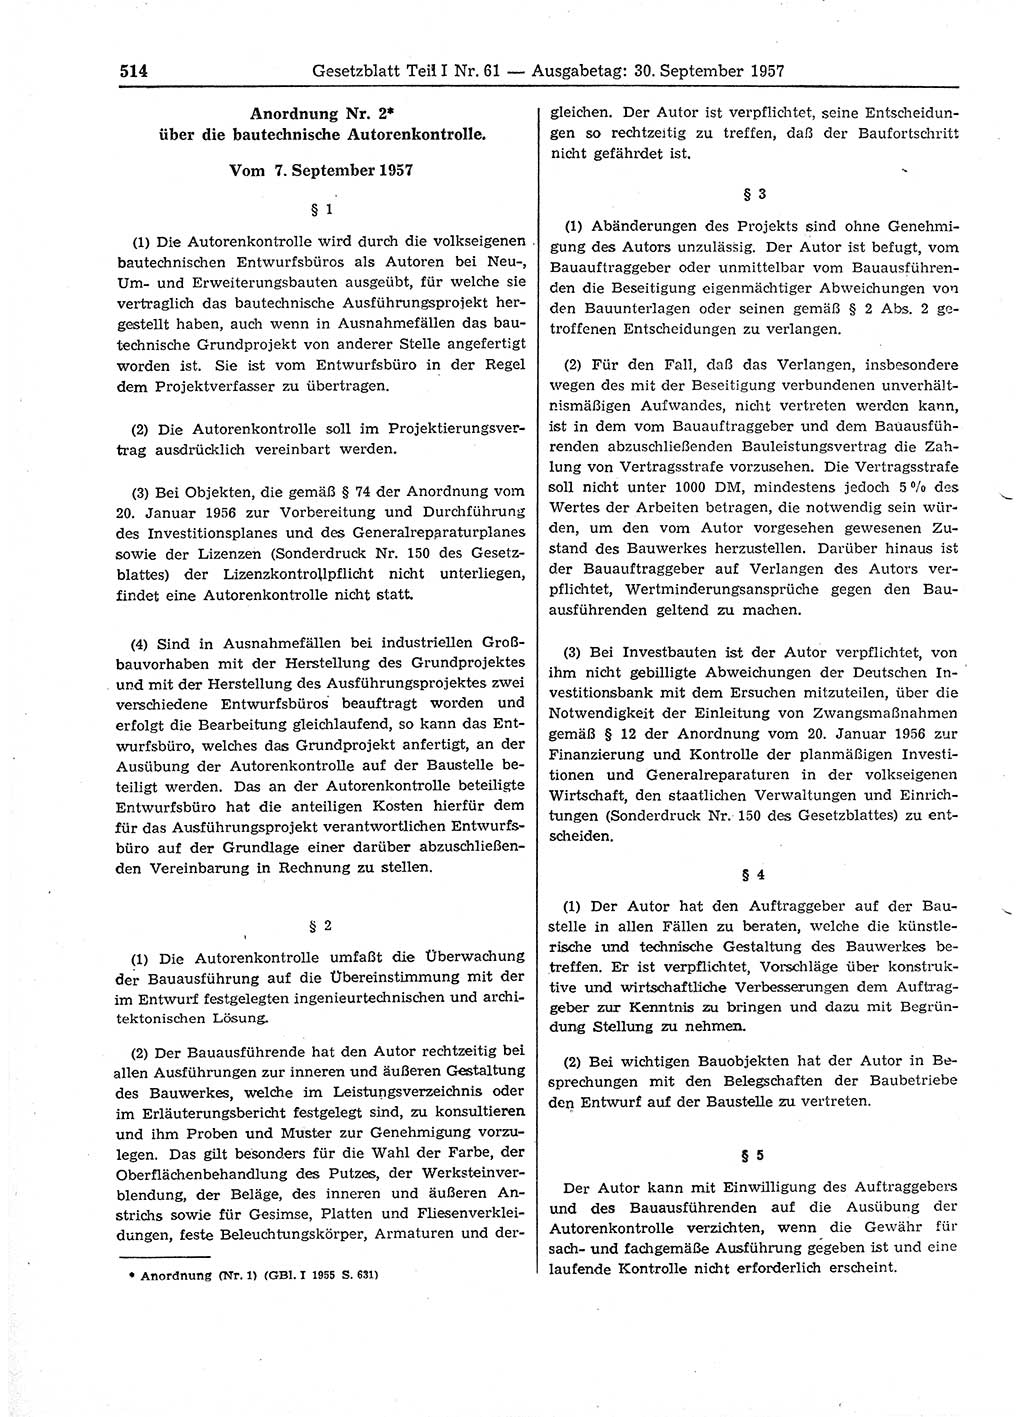 Gesetzblatt (GBl.) der Deutschen Demokratischen Republik (DDR) Teil Ⅰ 1957, Seite 514 (GBl. DDR Ⅰ 1957, S. 514)